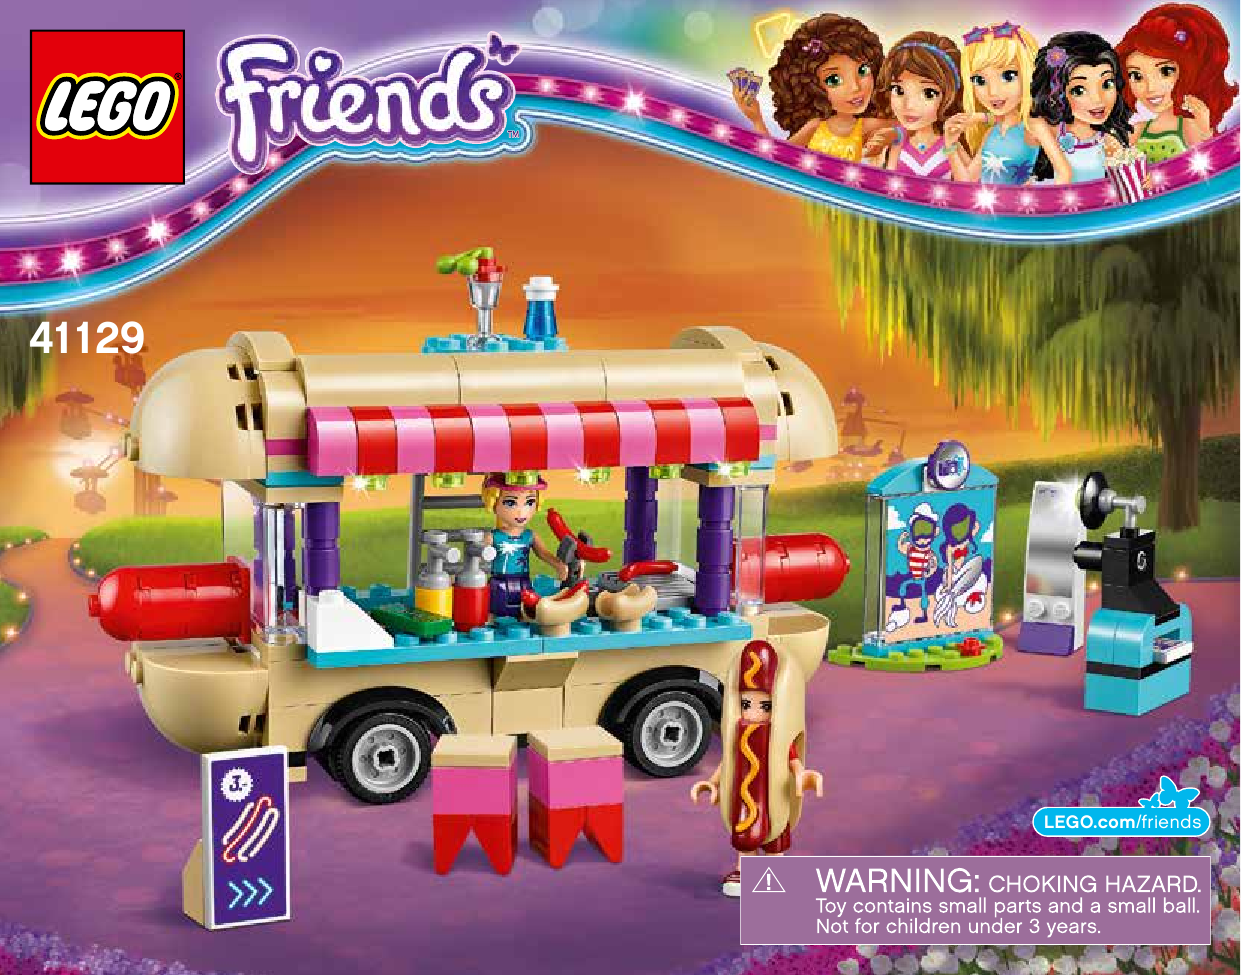 Amusement Park Hot Dog Van